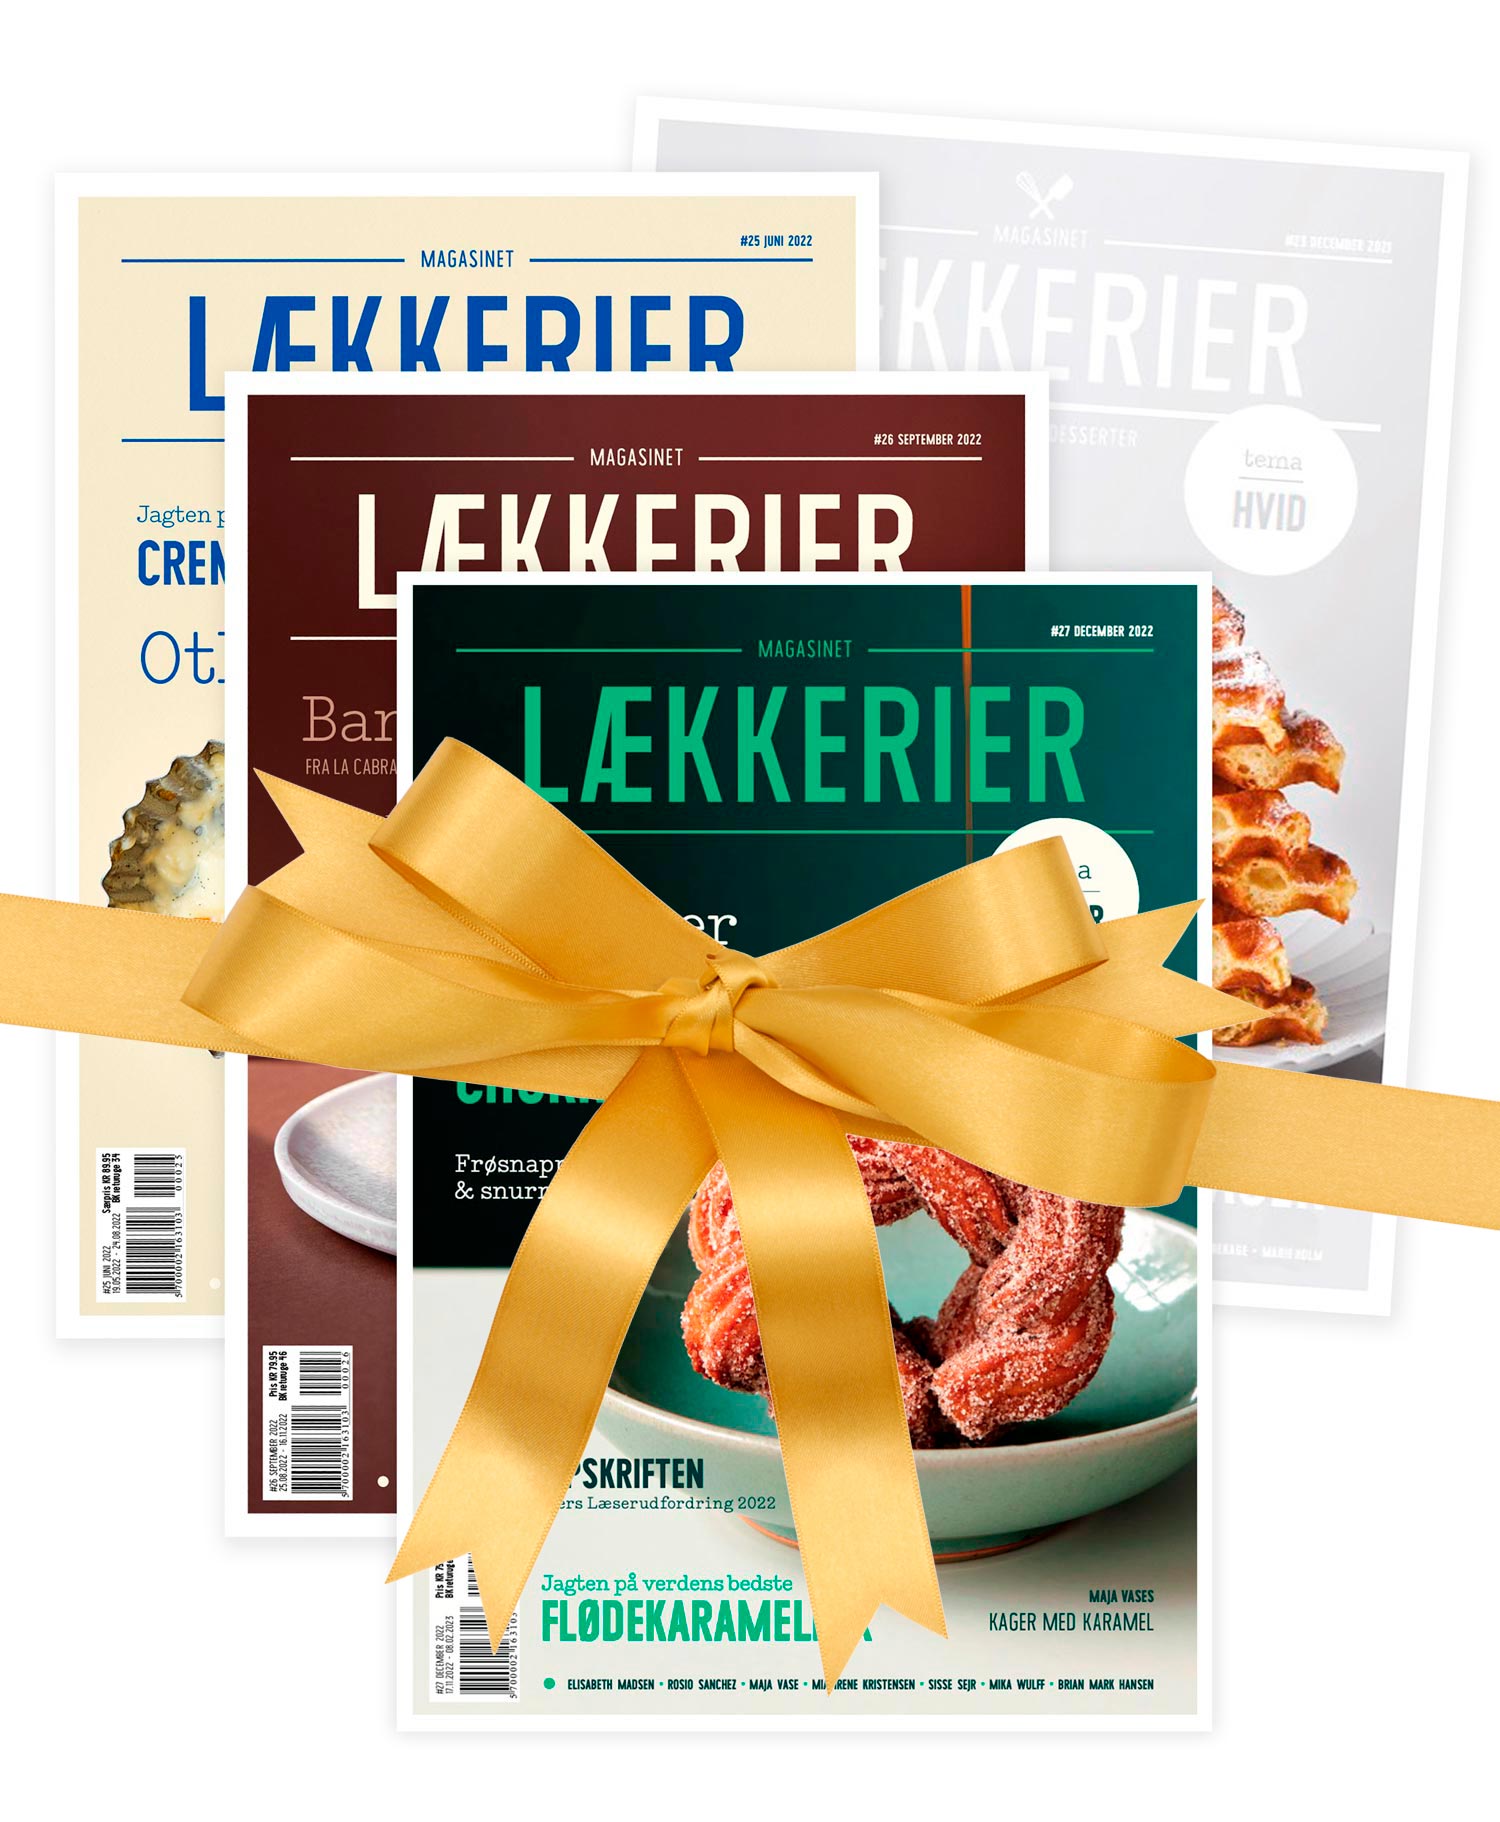 Lækkerier-printselv-gavebevis-magasin